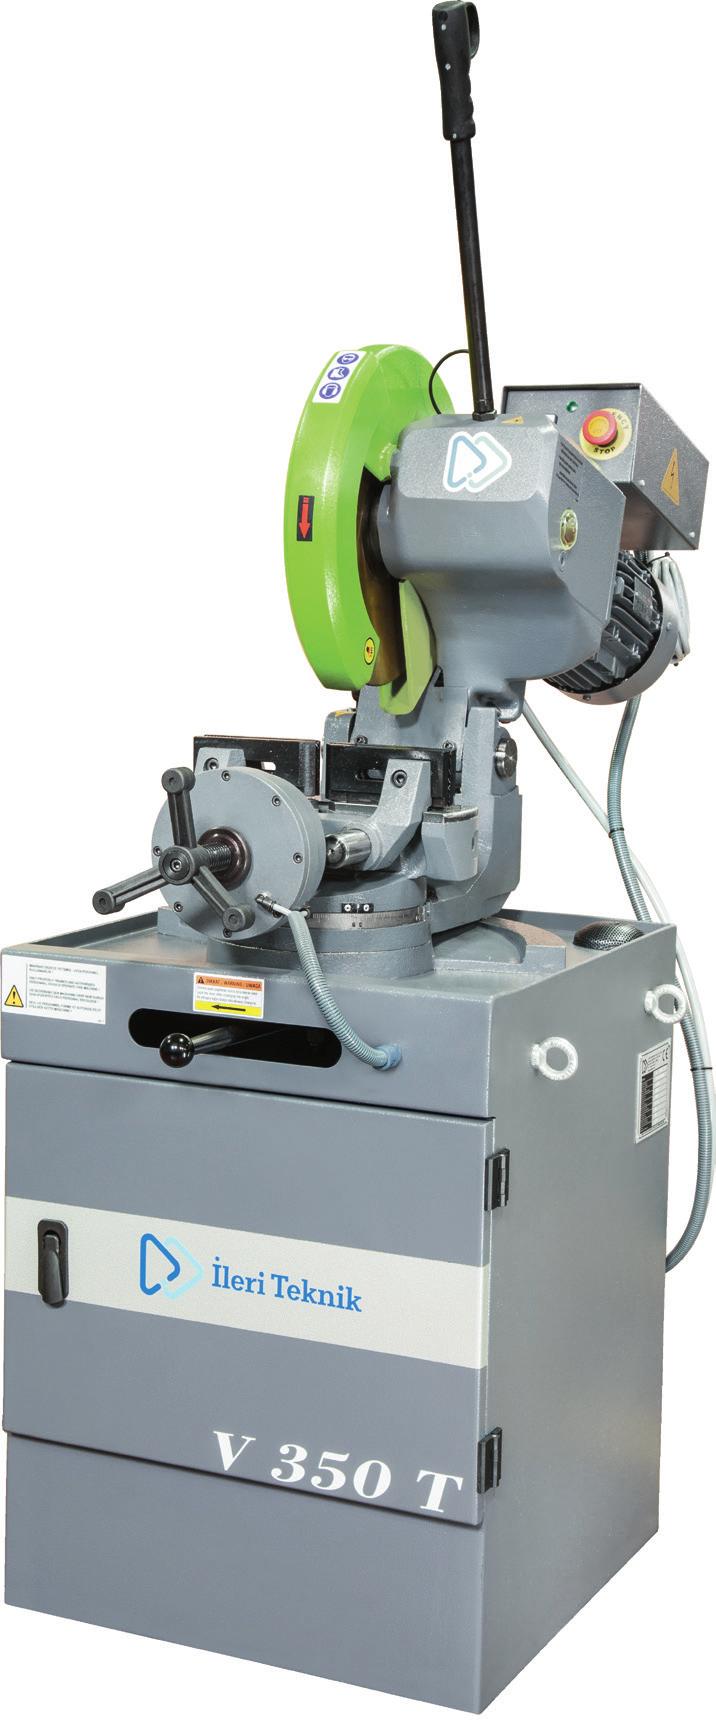 MENGENE OTOMATİK MAKİNELER Bu tip makineler aynı ölçüde malzemelerin sıklıkla kesildiği düşük hacimli işlerde kullanılabilir.